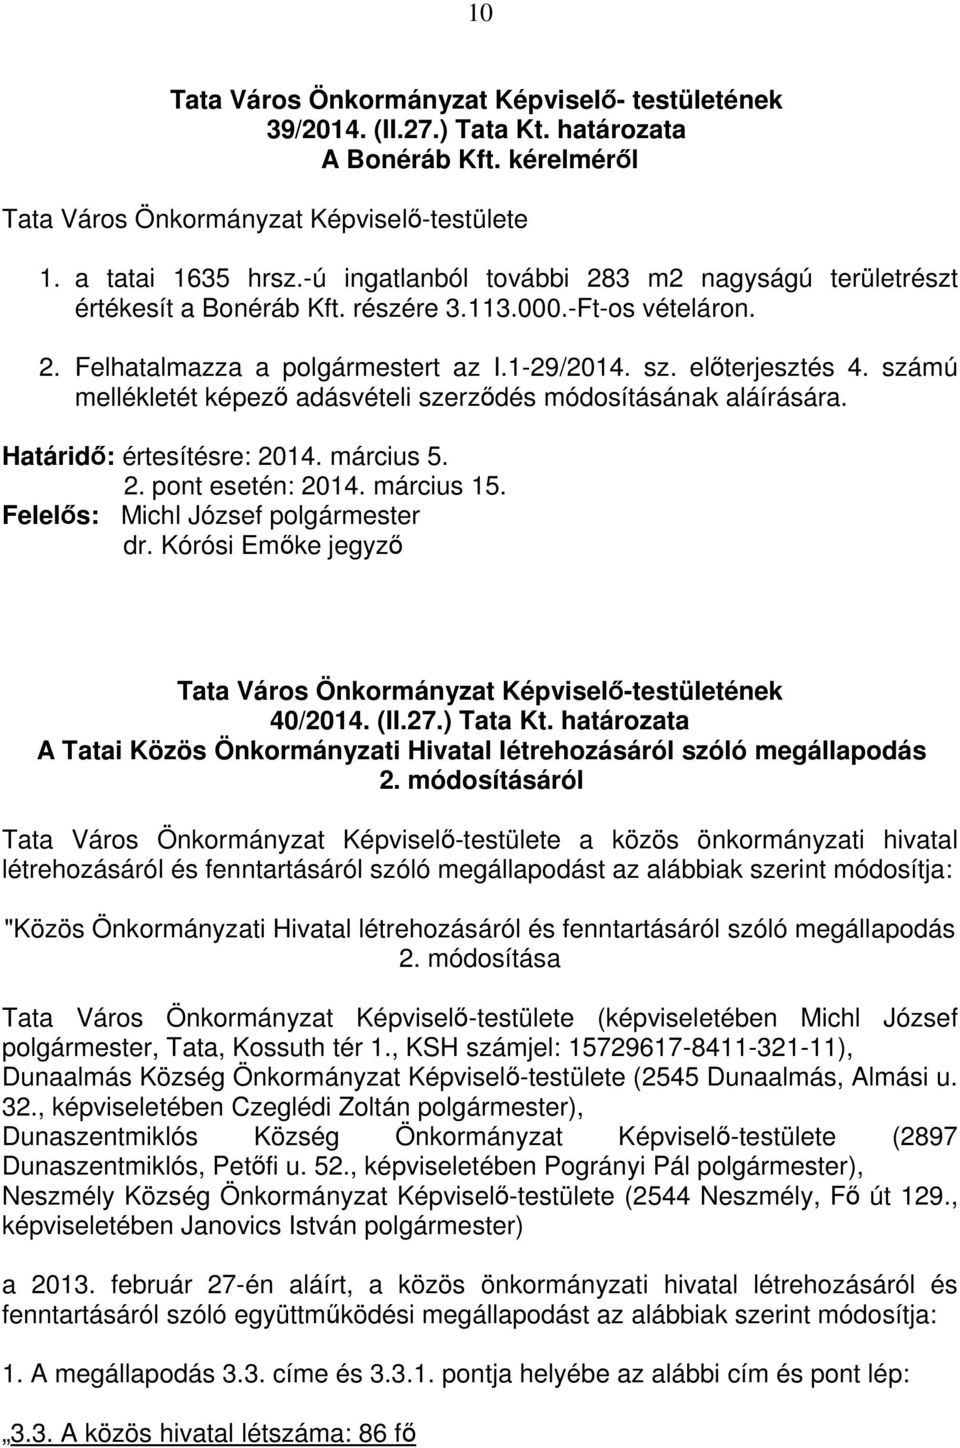 számú mellékletét képező adásvételi szerződés módosításának aláírására. Határidő: értesítésre: 2014. március 5. 2. pont esetén: 2014. március 15. dr. Kórósi Emőke jegyző 40/2014. (II.27.) Tata Kt.